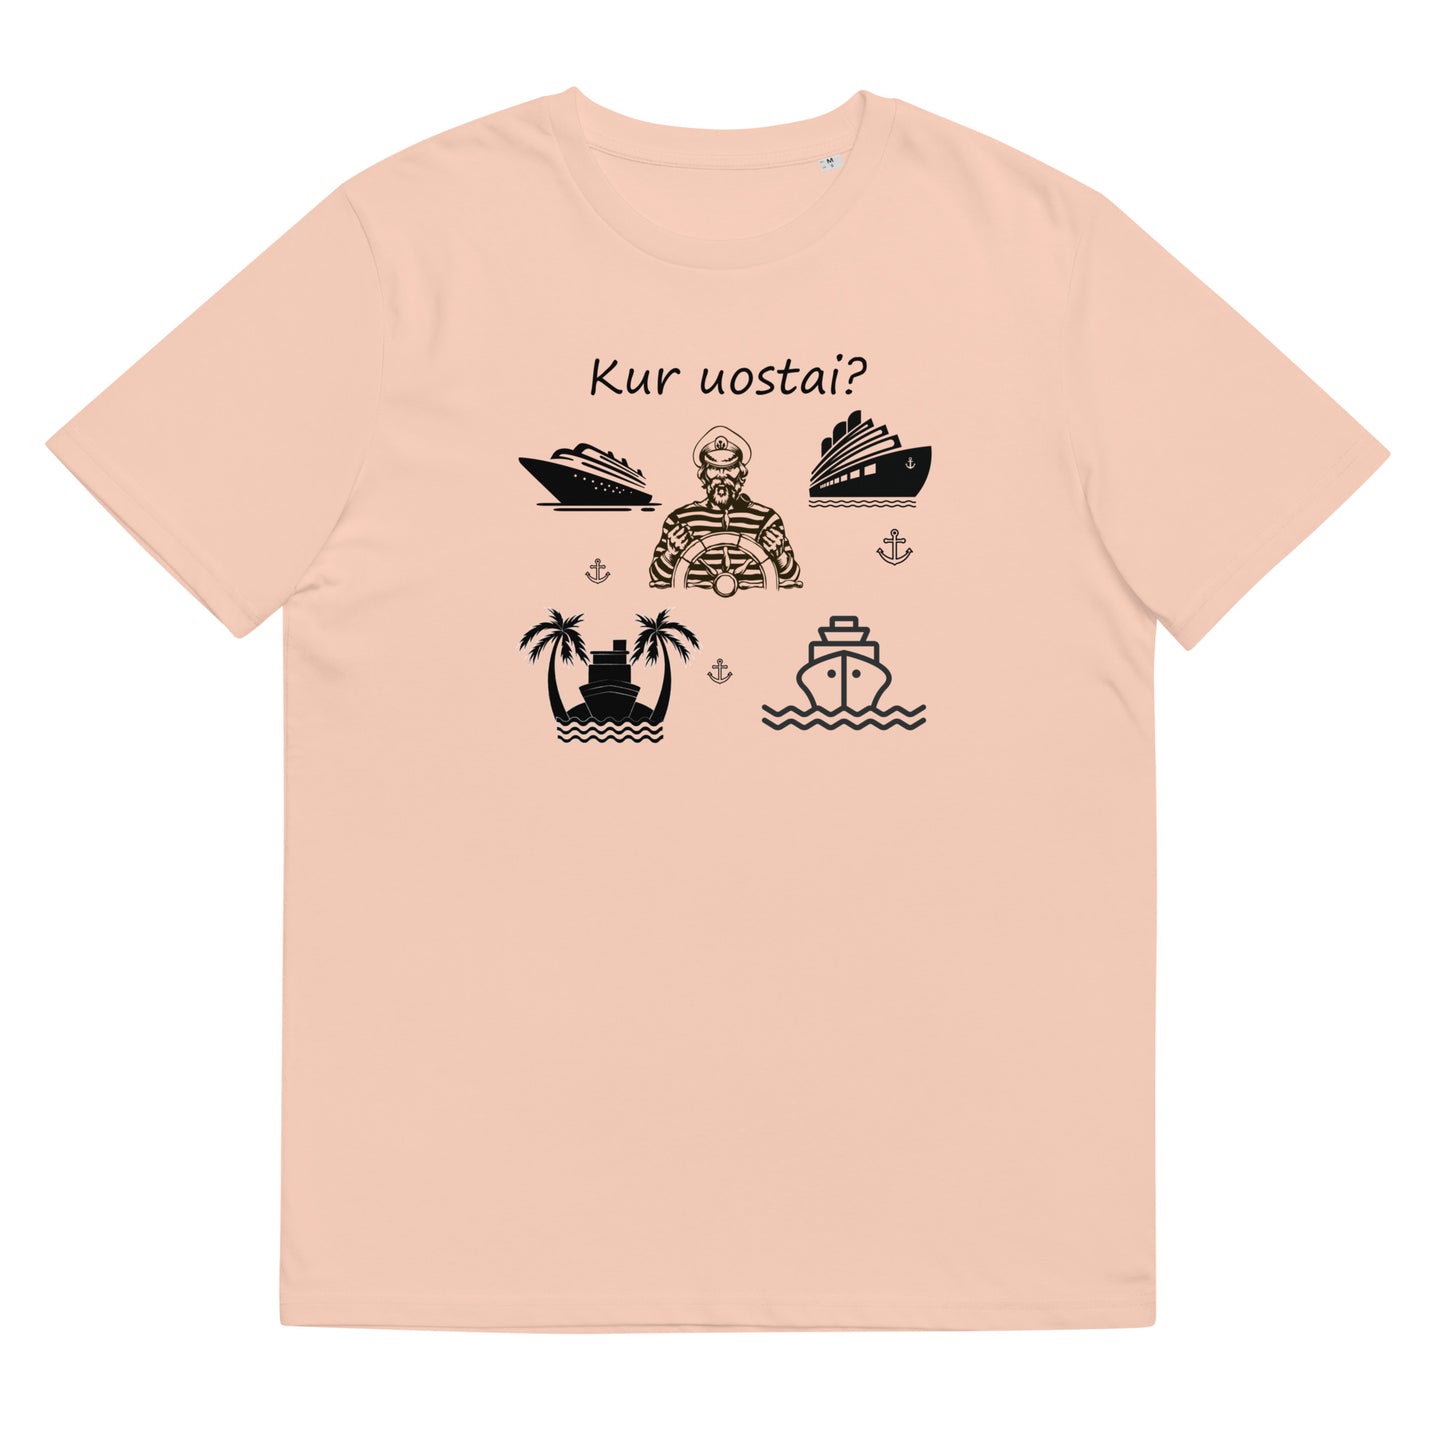 Organic cotton unisex t-shirt: "Where do you go?"